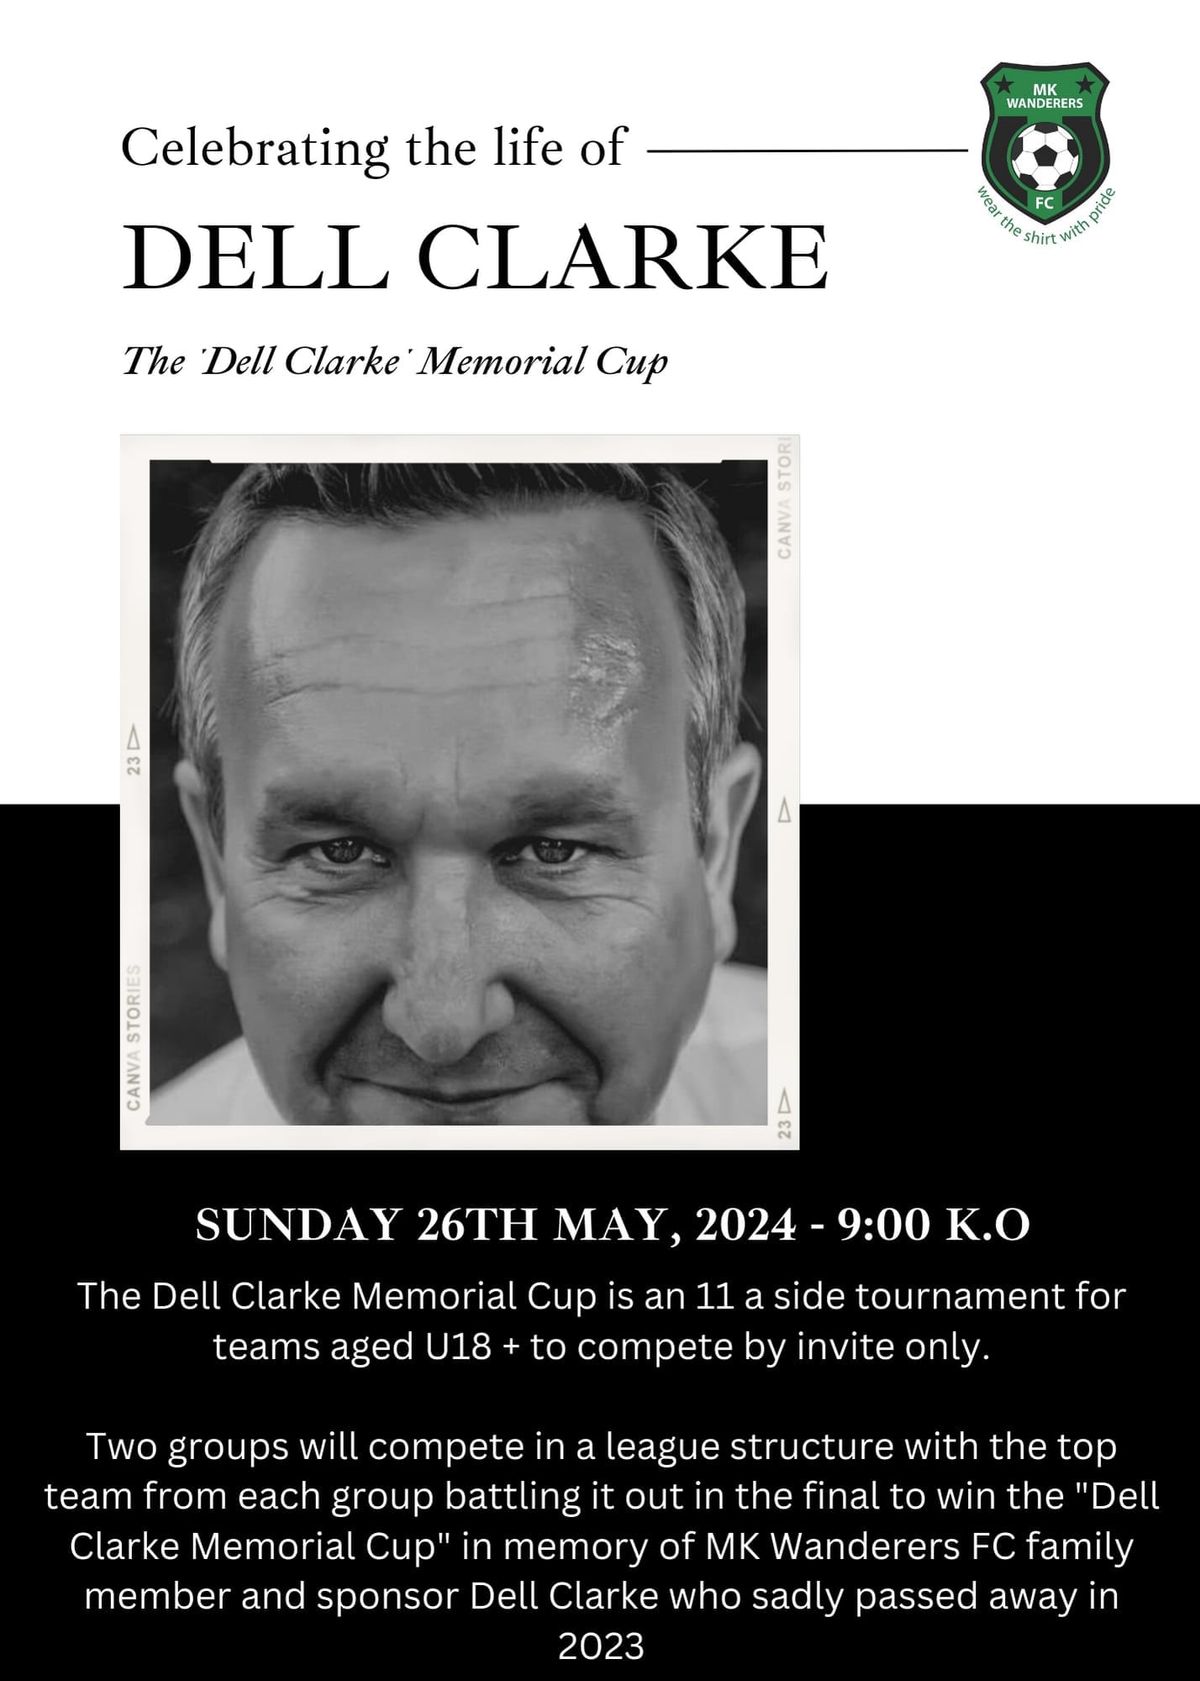 Dell Clarke Memorial Cup